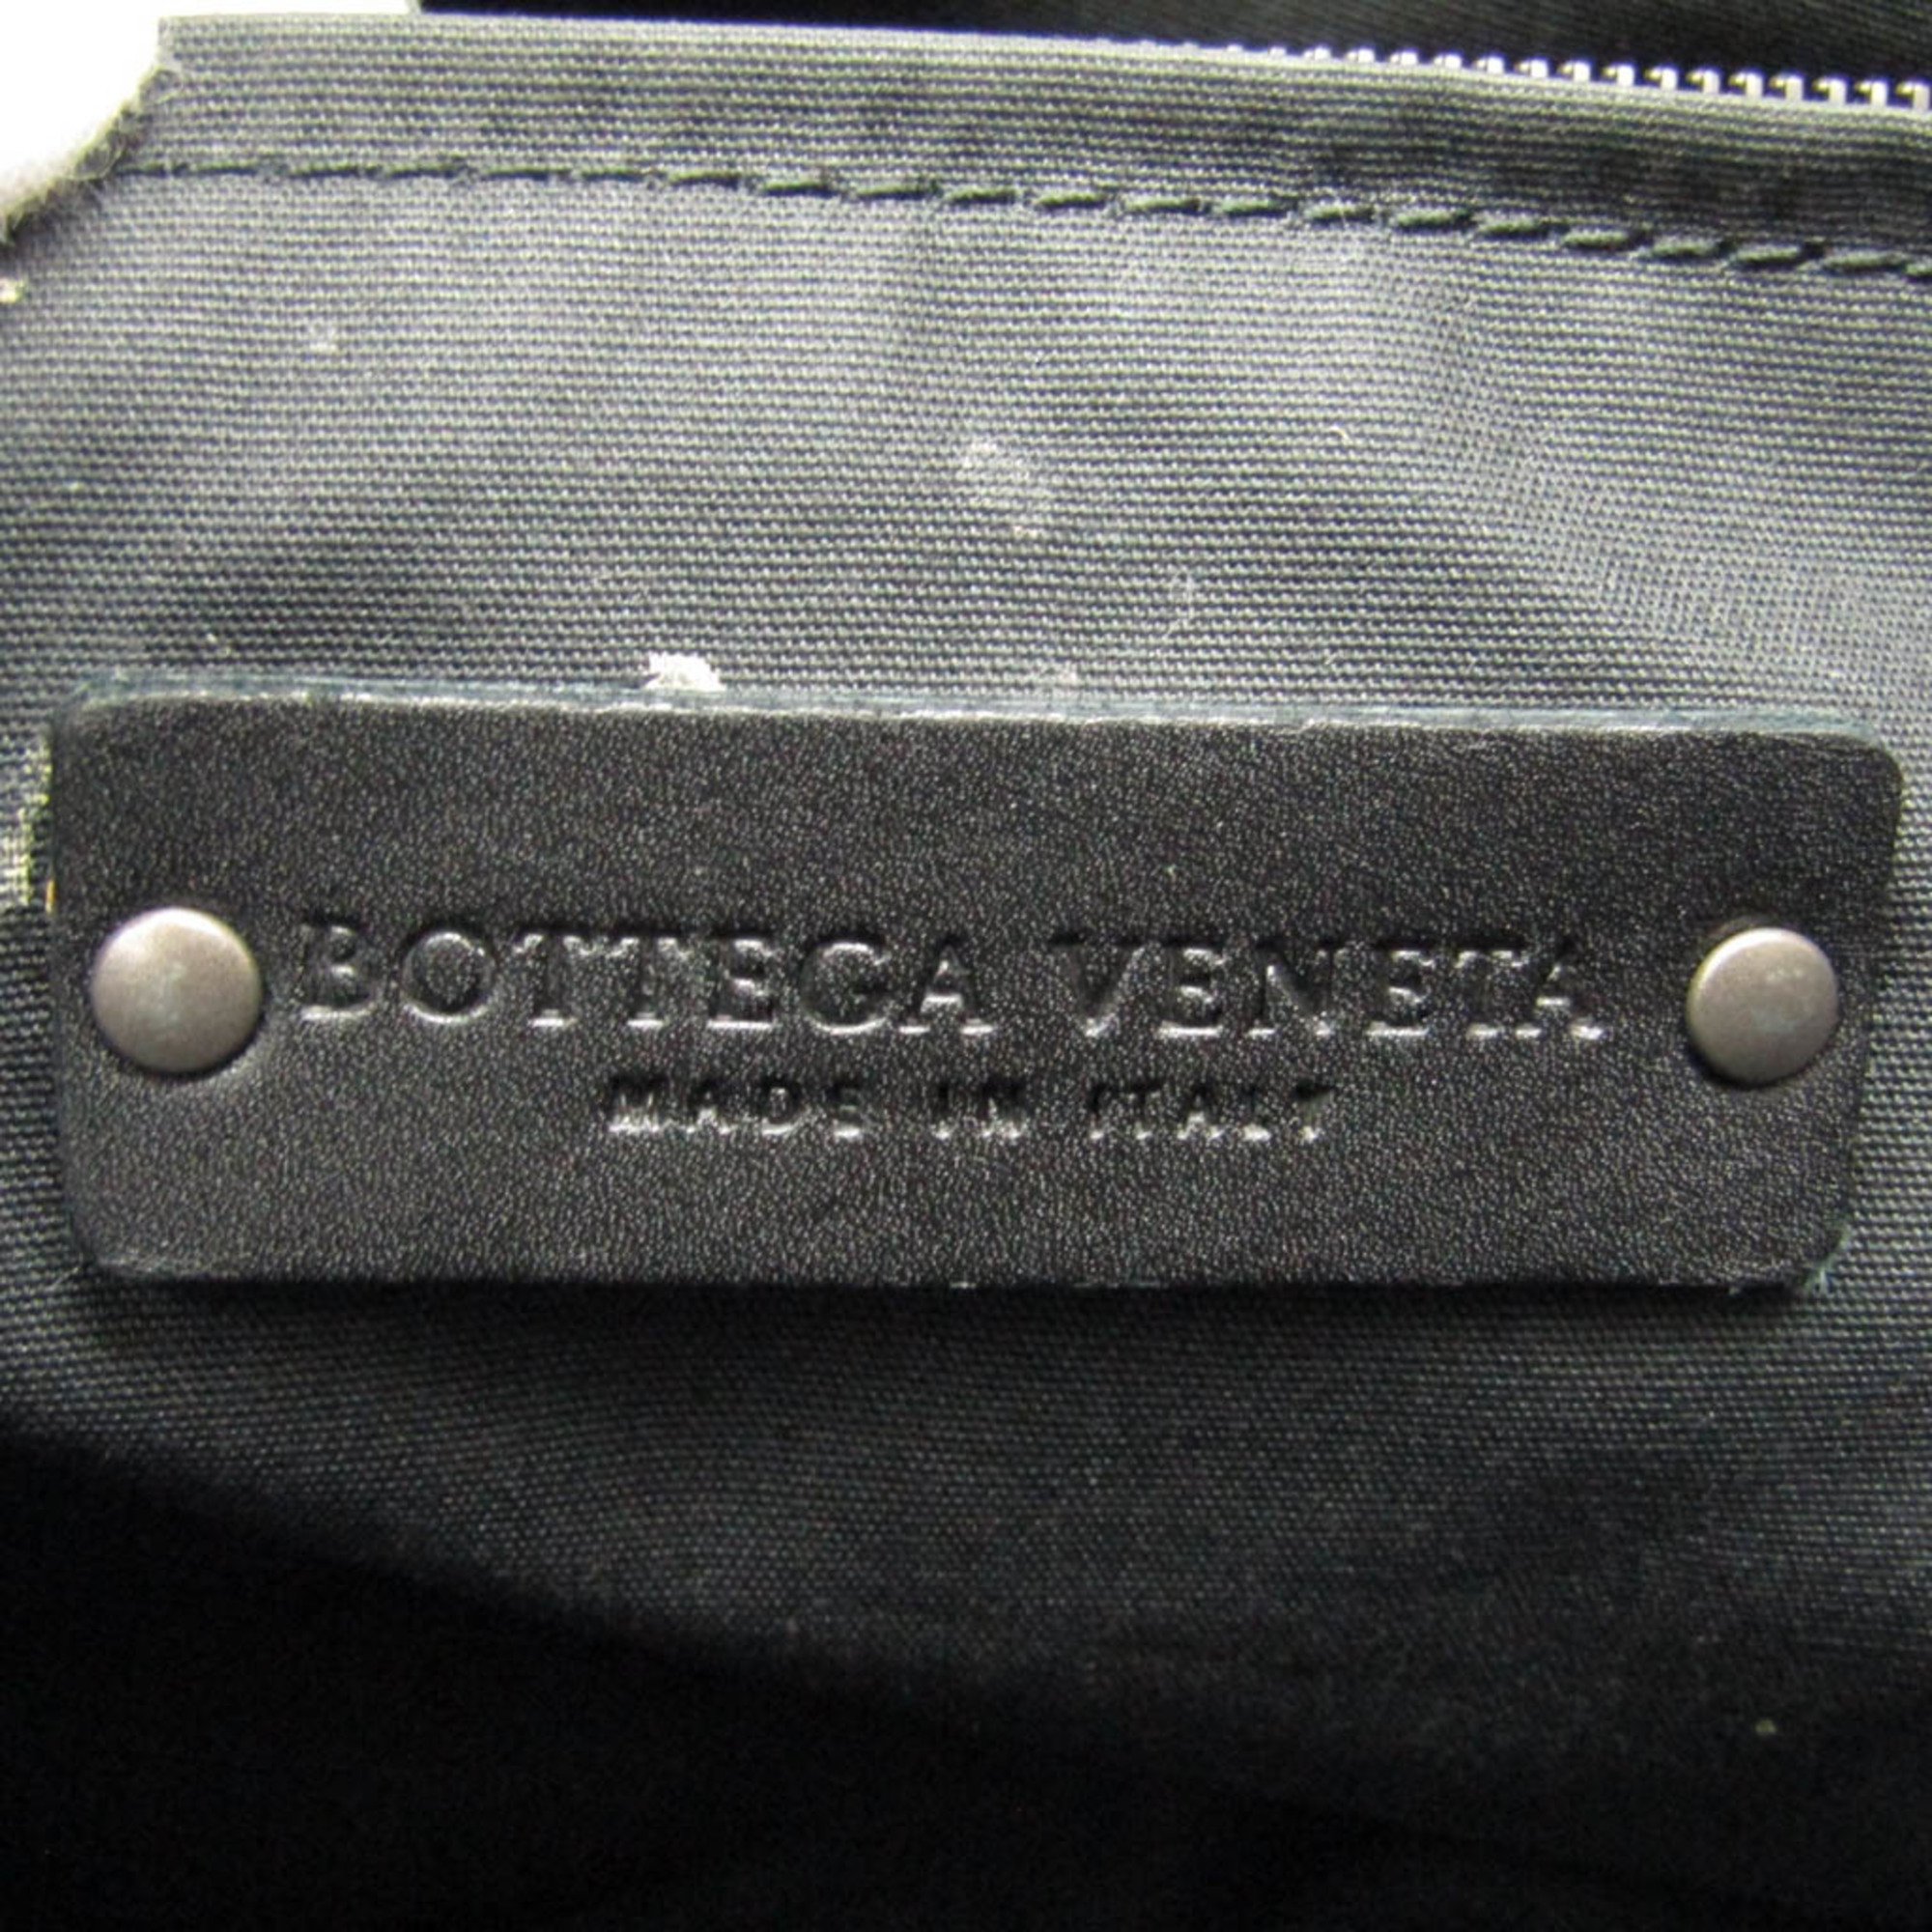 ボッテガ・ヴェネタ(Bottega Veneta) イントレチャート マルコポーロ メンズ PVC,レザー トートバッグ ブラック,ネイビー